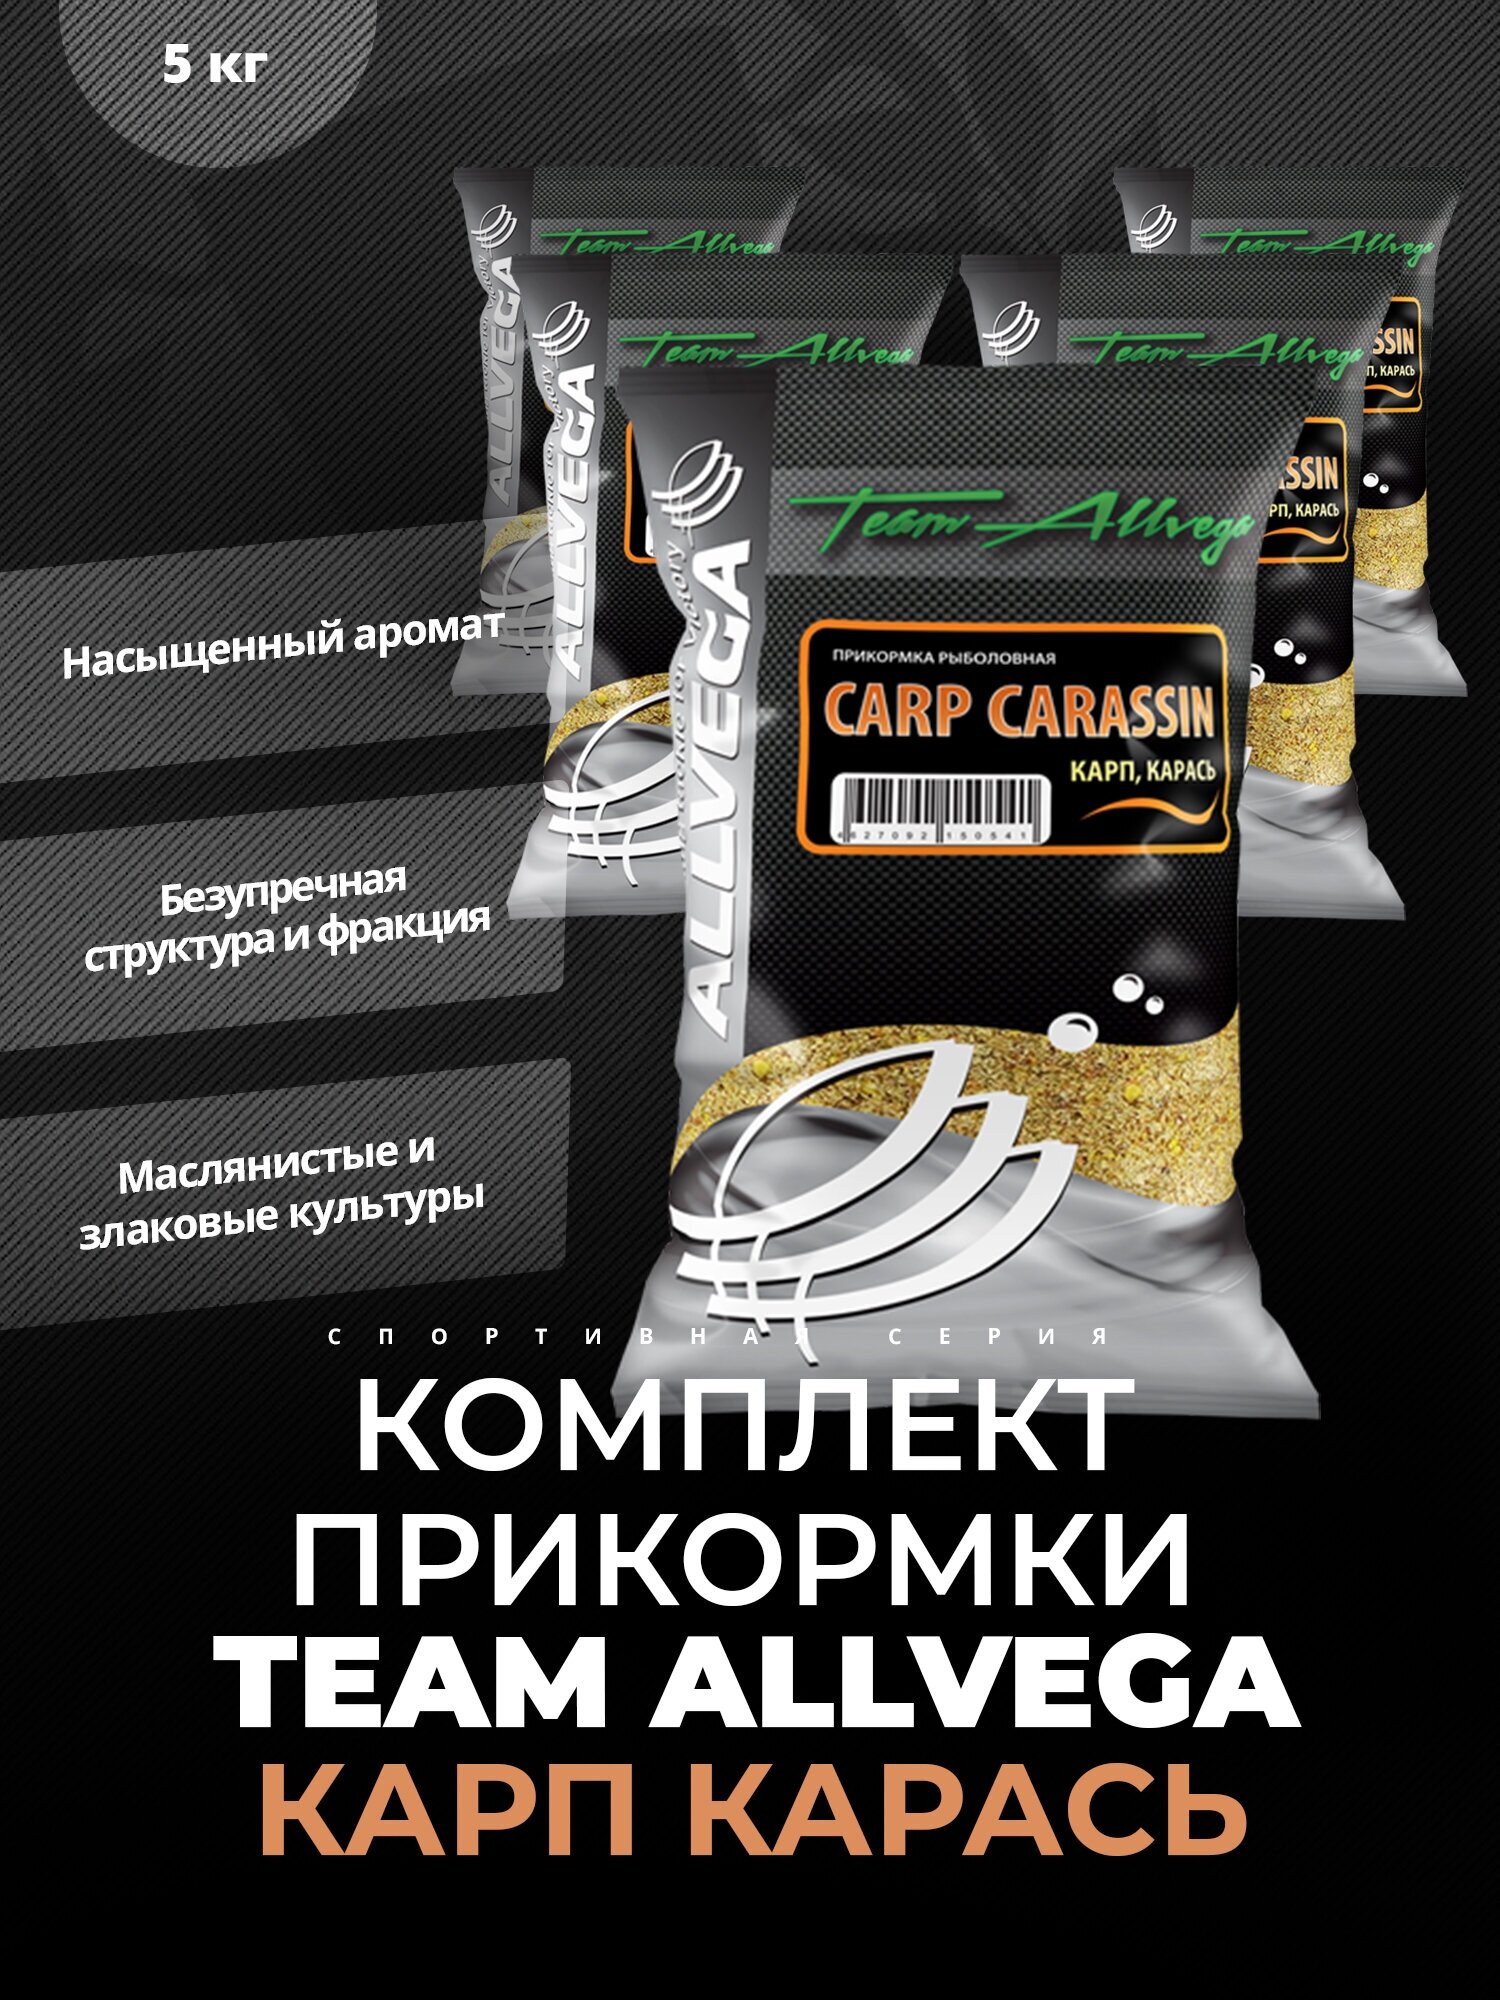  ALLVEGA "Team Allvega Carp Carassin" 1 (, ) 5   1 